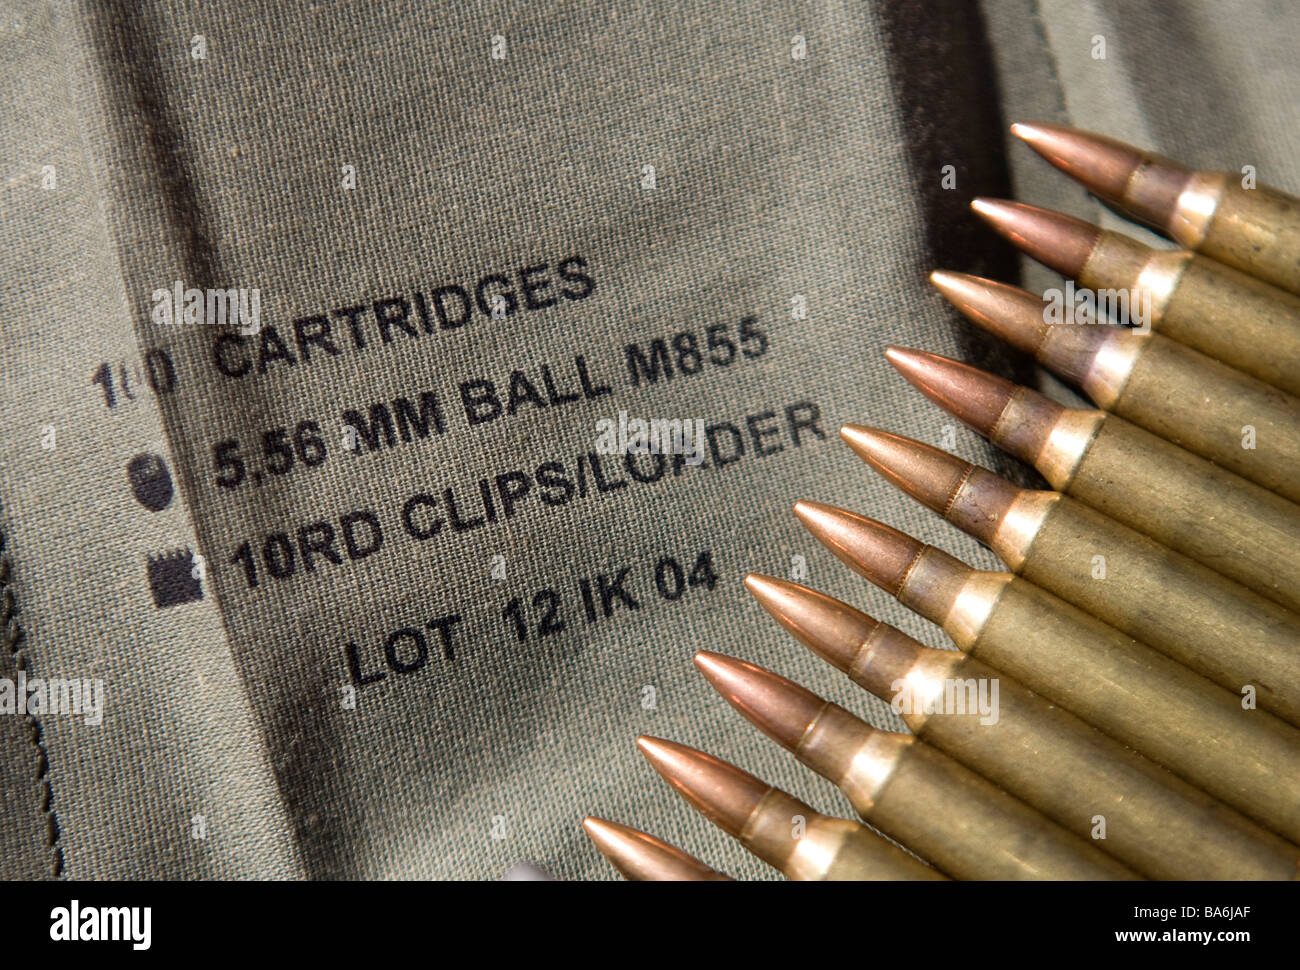 12. April 2009 Frederick Maryland kleine Kaliber Gewehrmunition ein Munition Mangel hat die USA getroffen. Stockfoto